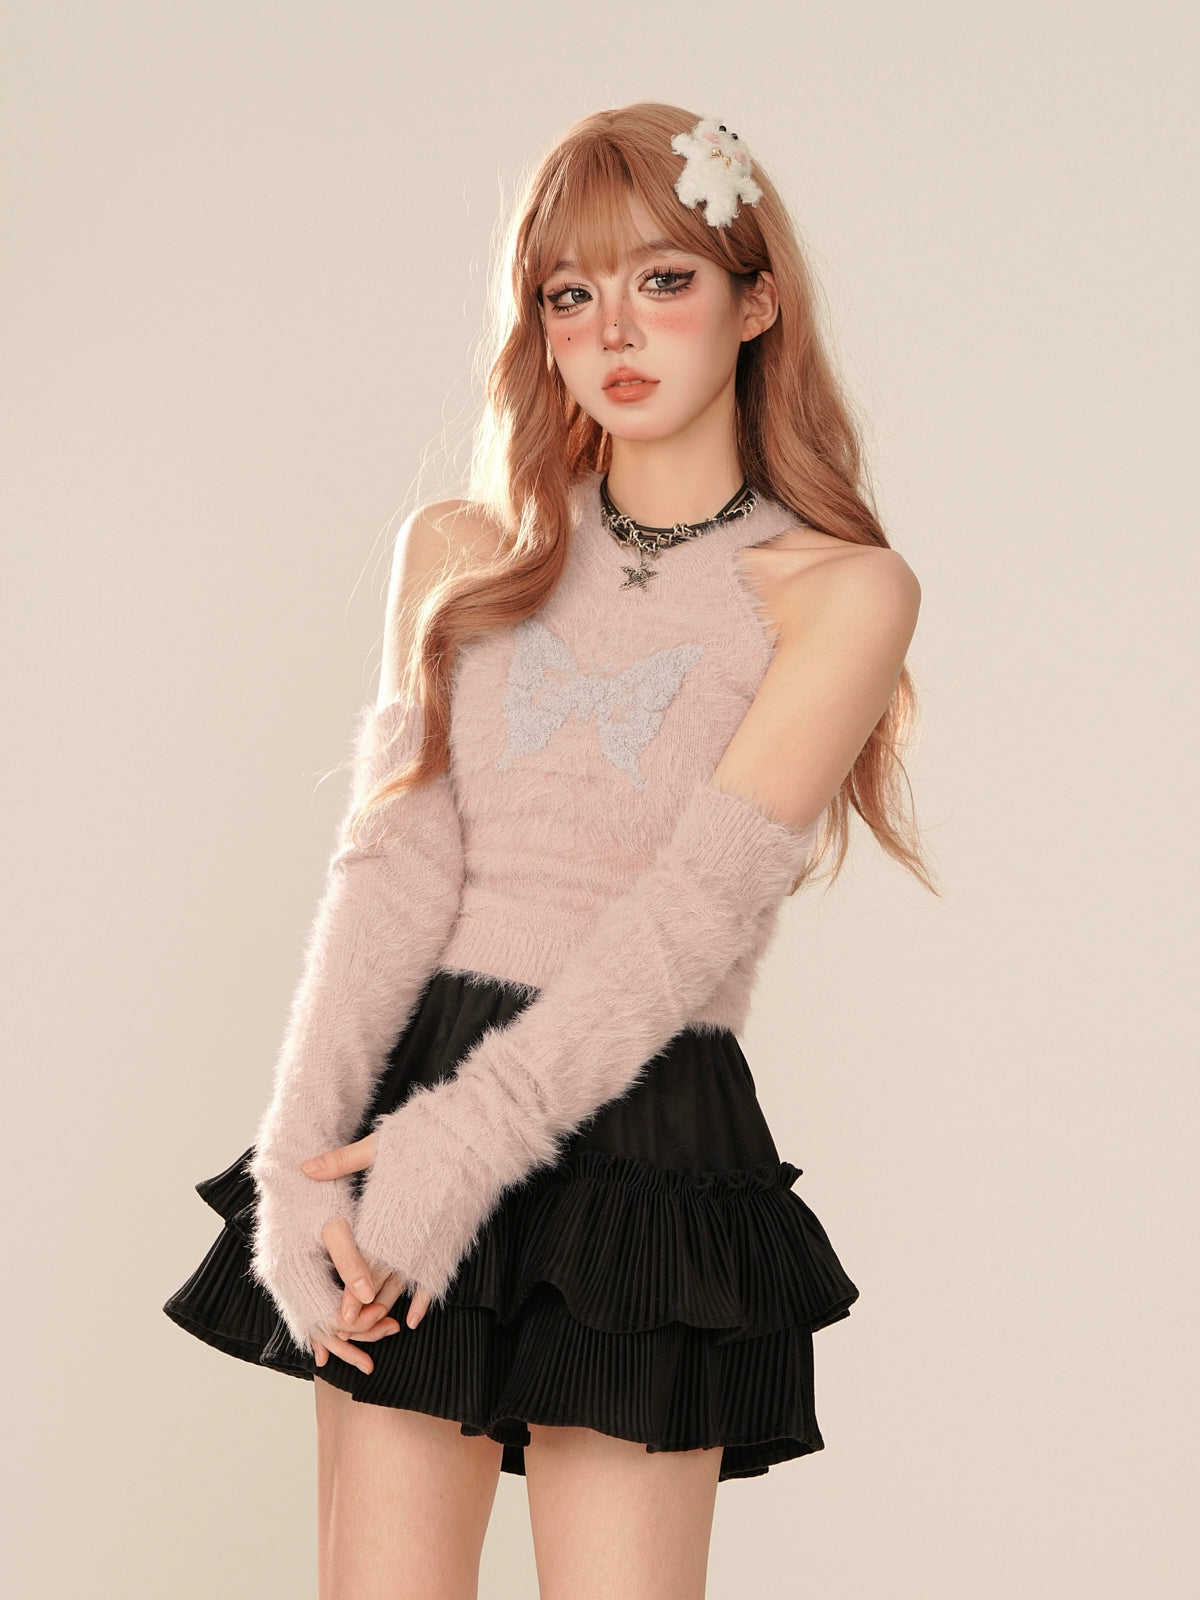 Gumm pink -off shoulder shagie knit tops + knit sleeve [Reserved items]